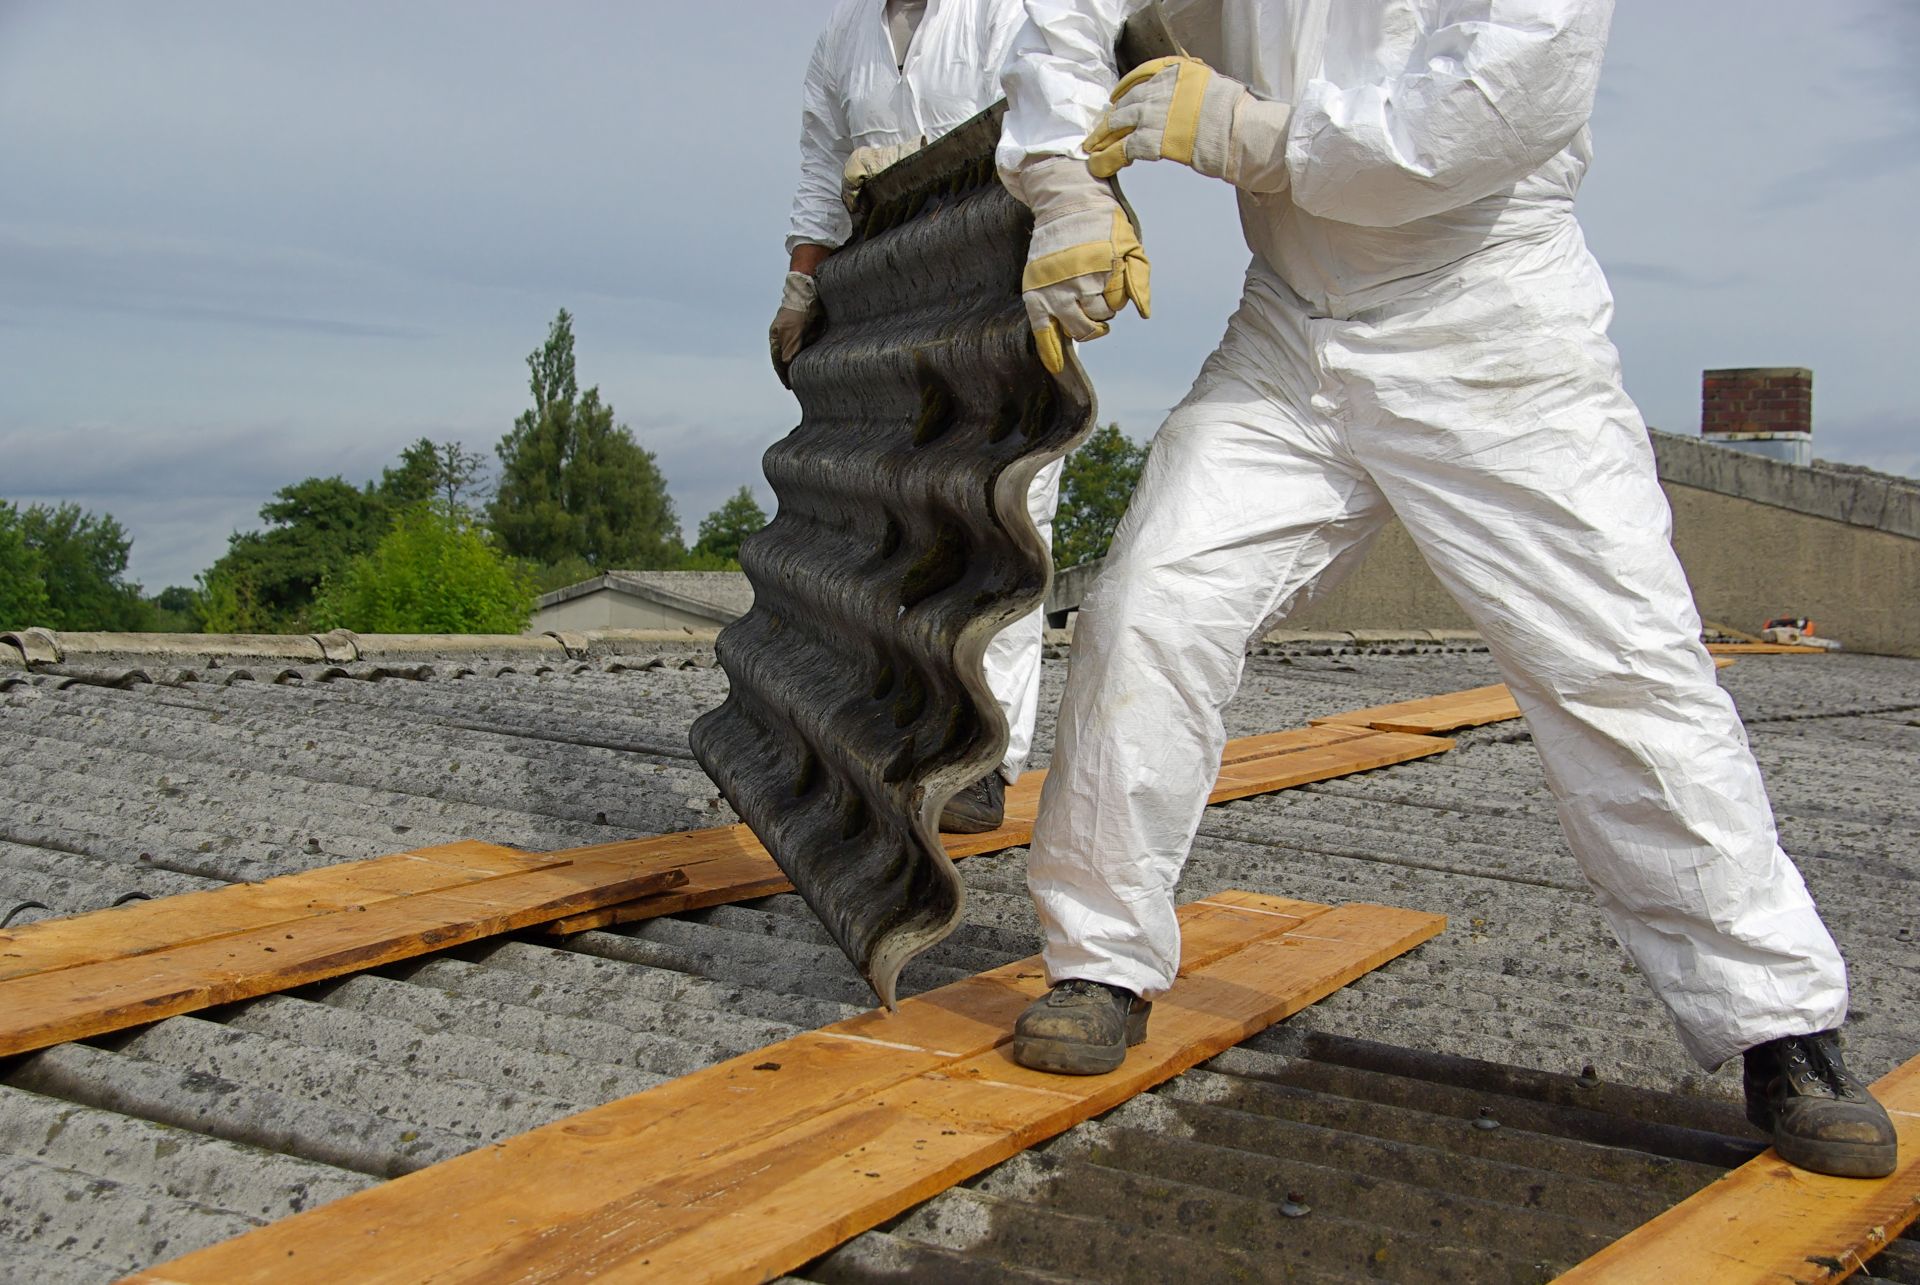 Nakladanie so stavebným odpadom, ktorý obsahuje azbest, upravuje zákon. Eternitovú strechu vám musí odstrániť špecializovaná firma.